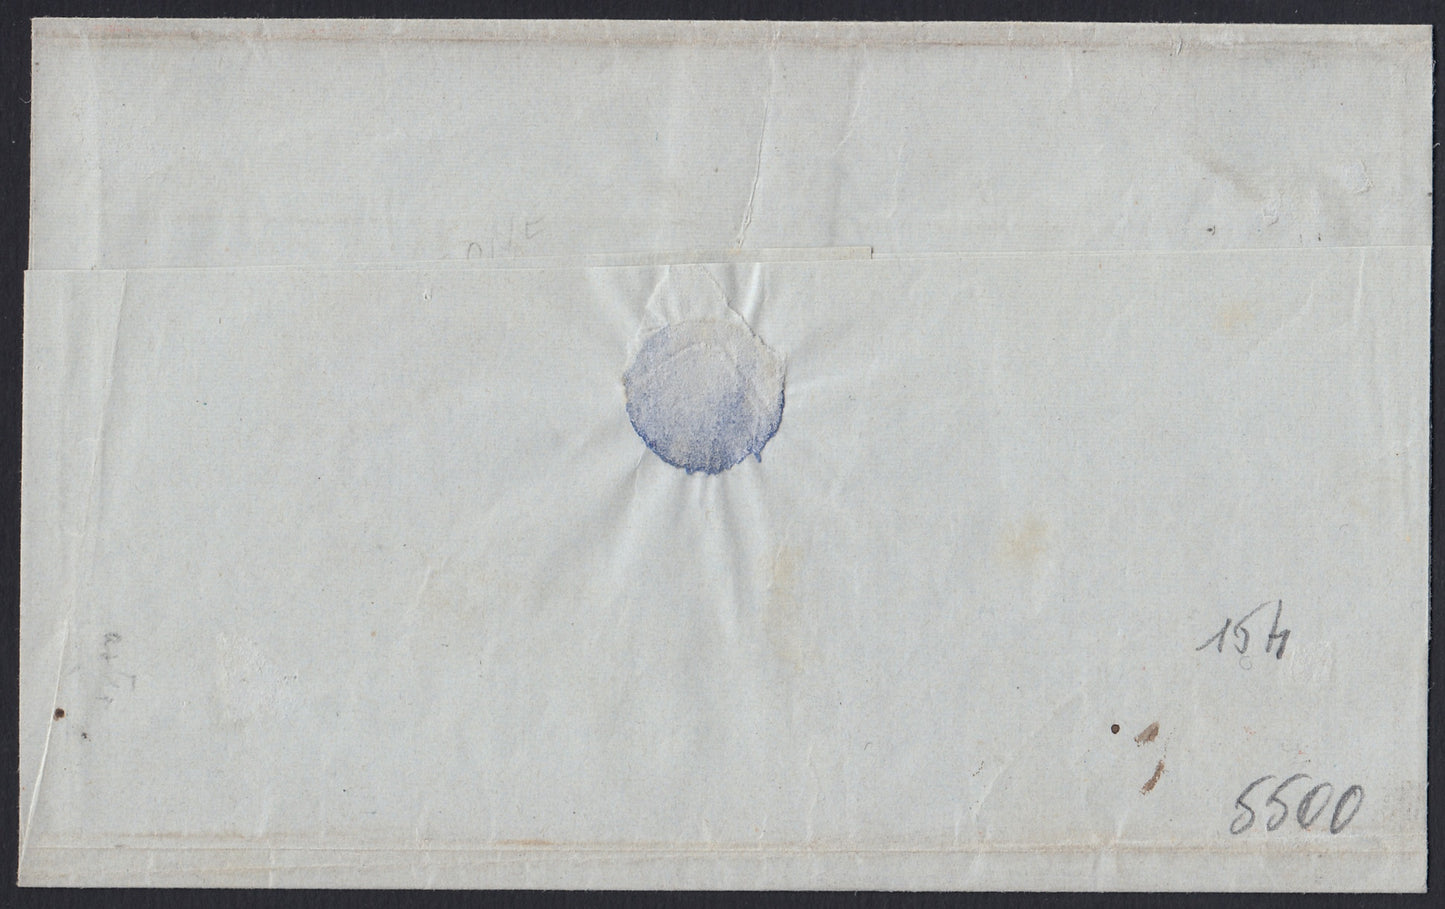 190 - 1855  Lettera spedita da Torino per Casale 11/10/55 affrancata con c. 20 celeste vivace I tavola tiratura 55 (15h)